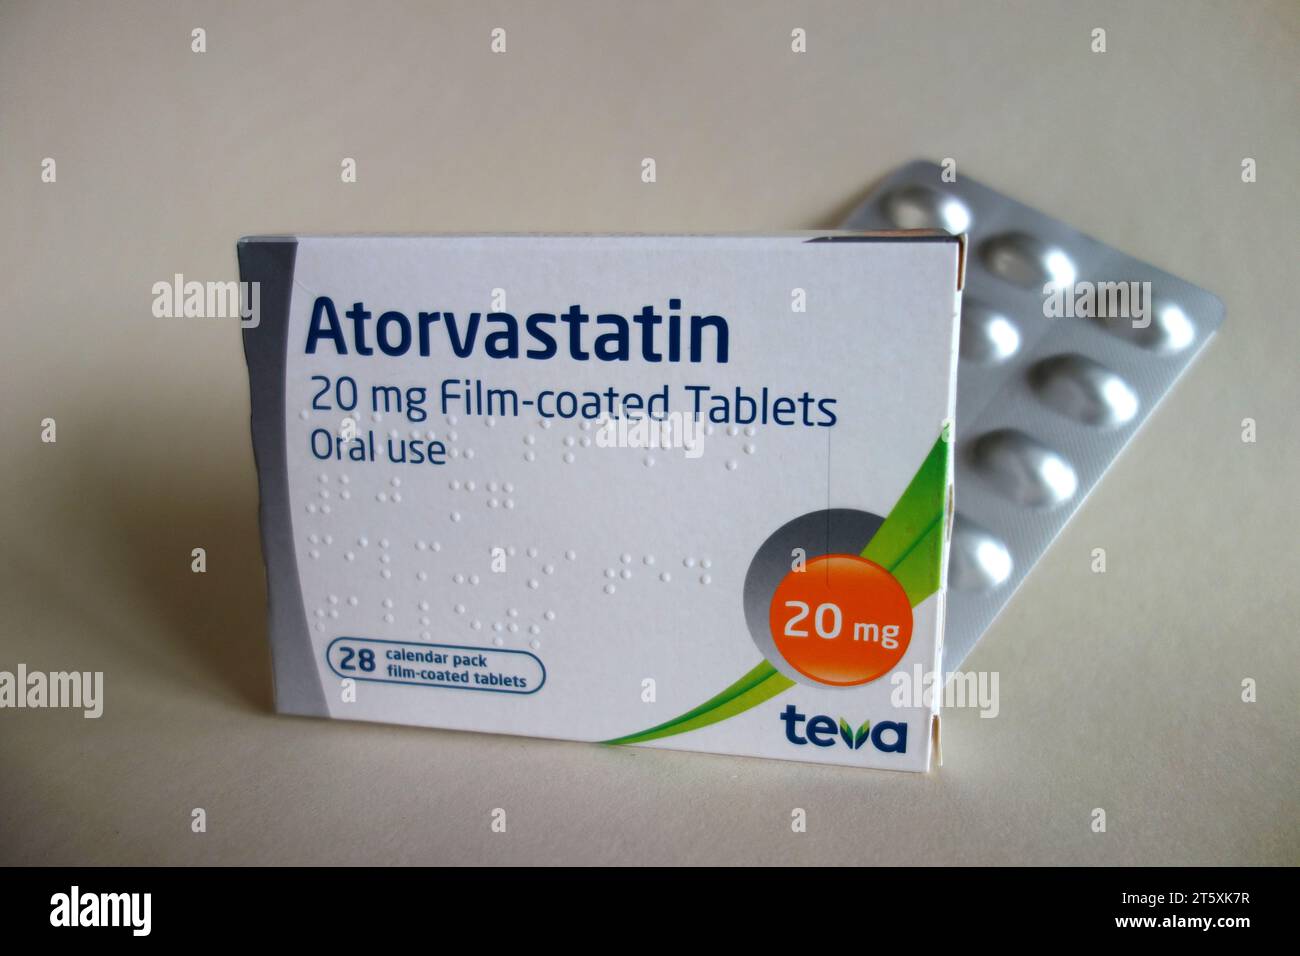 Una scatola da 28, 20 mg di atorvastatina rivestita con pellicola (Lipitor) compresse di "statina" realizzate da Teva prescritte per ridurre il colesterolo, Inghilterra, Regno Unito. Foto Stock